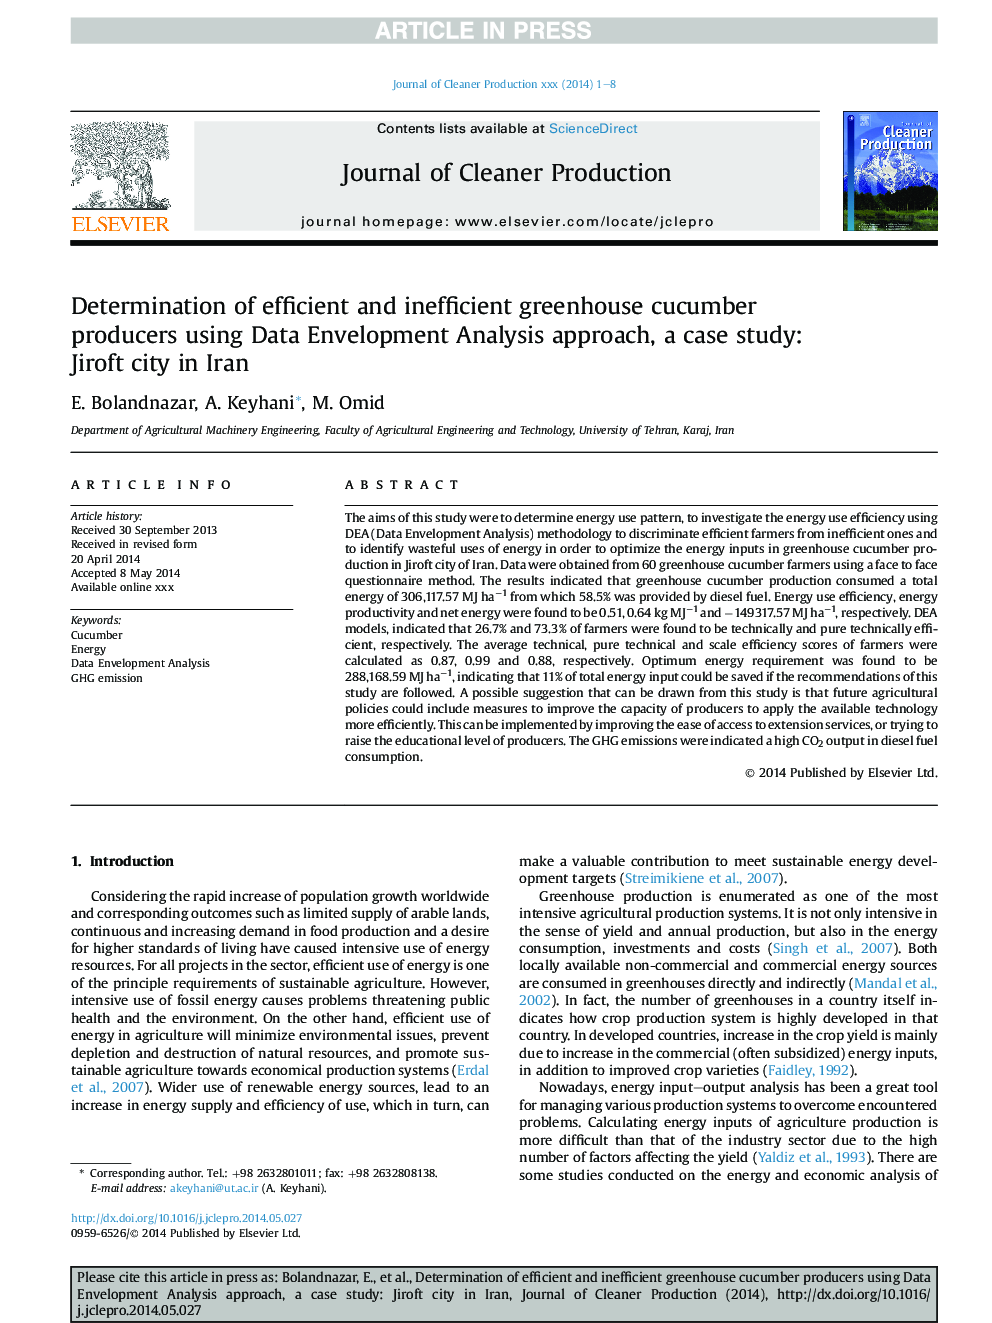 تعیین عوامل موثر بر تولید خیار گلخانه ای با استفاده از روش تحلیل پوششی داده ها، مطالعه موردی: شهر جیرفت در ایران 